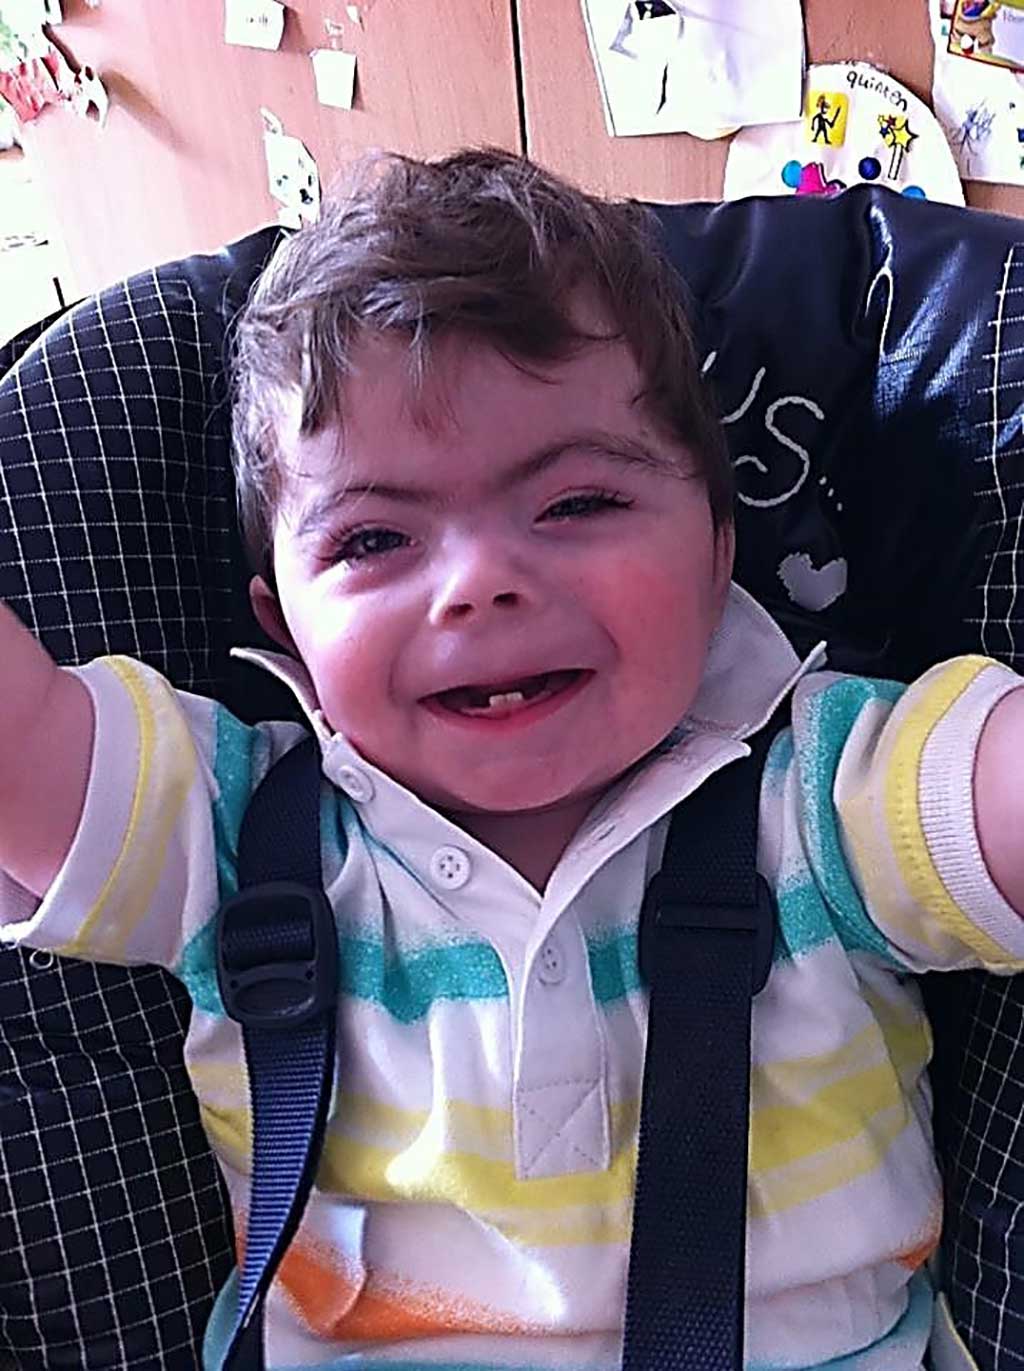 Image: One year old boy with Cornelia de Lange syndrome (Photo courtesy of the University of Washington).